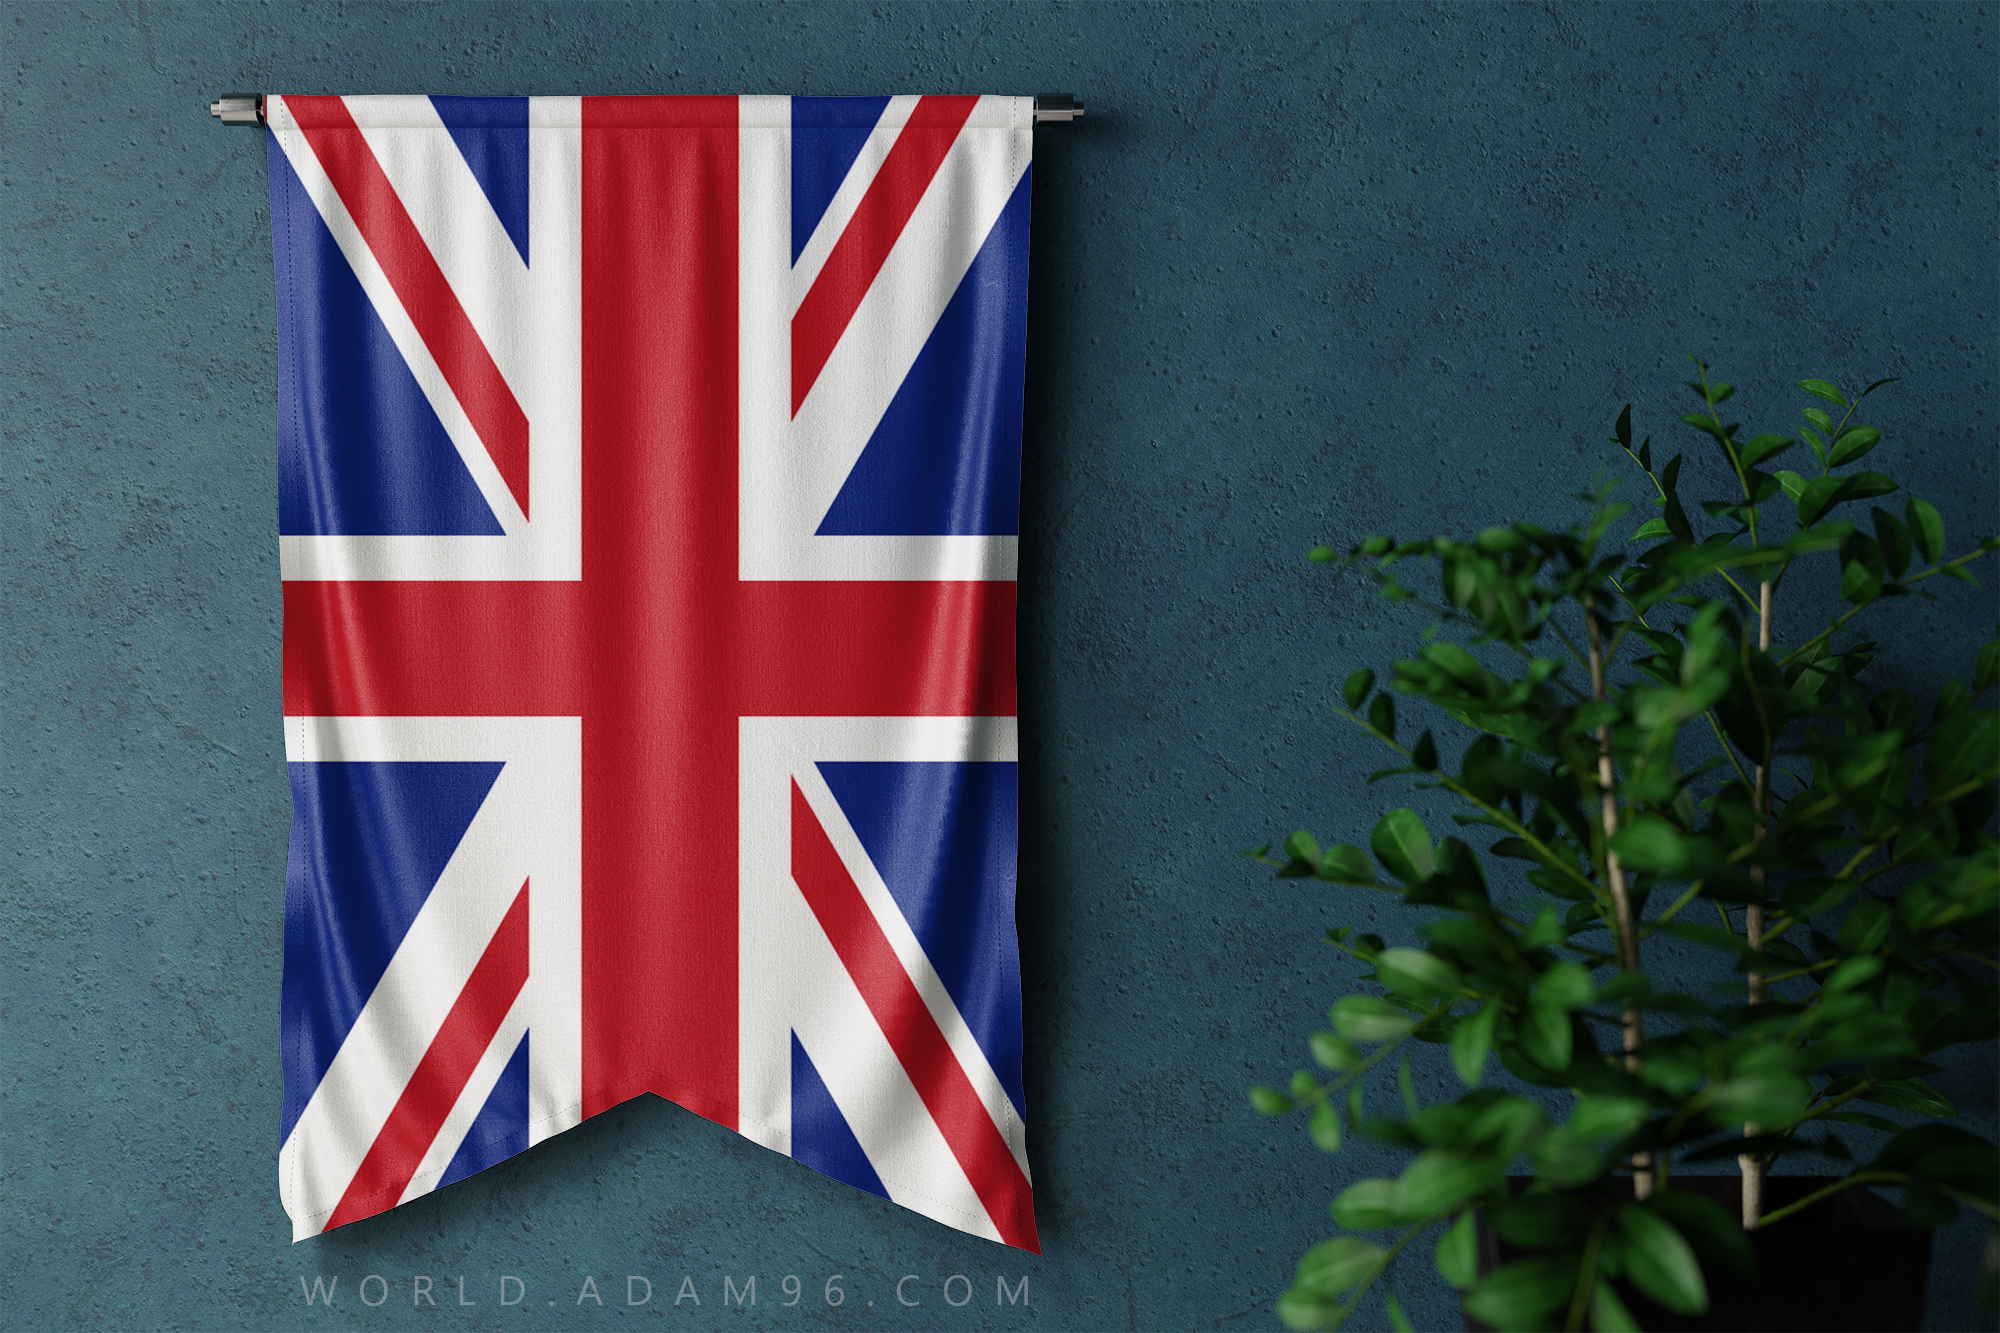 Bạn đang muốn biết tất cả về quốc kỳ và vẻ đẹp văn hóa của Vương quốc Liên hiệp Anh và Bắc Ireland? Hãy cùng khám phá những hình ảnh tuyệt đẹp về quốc kỳ của Anh một cách bền vững và chân thật.